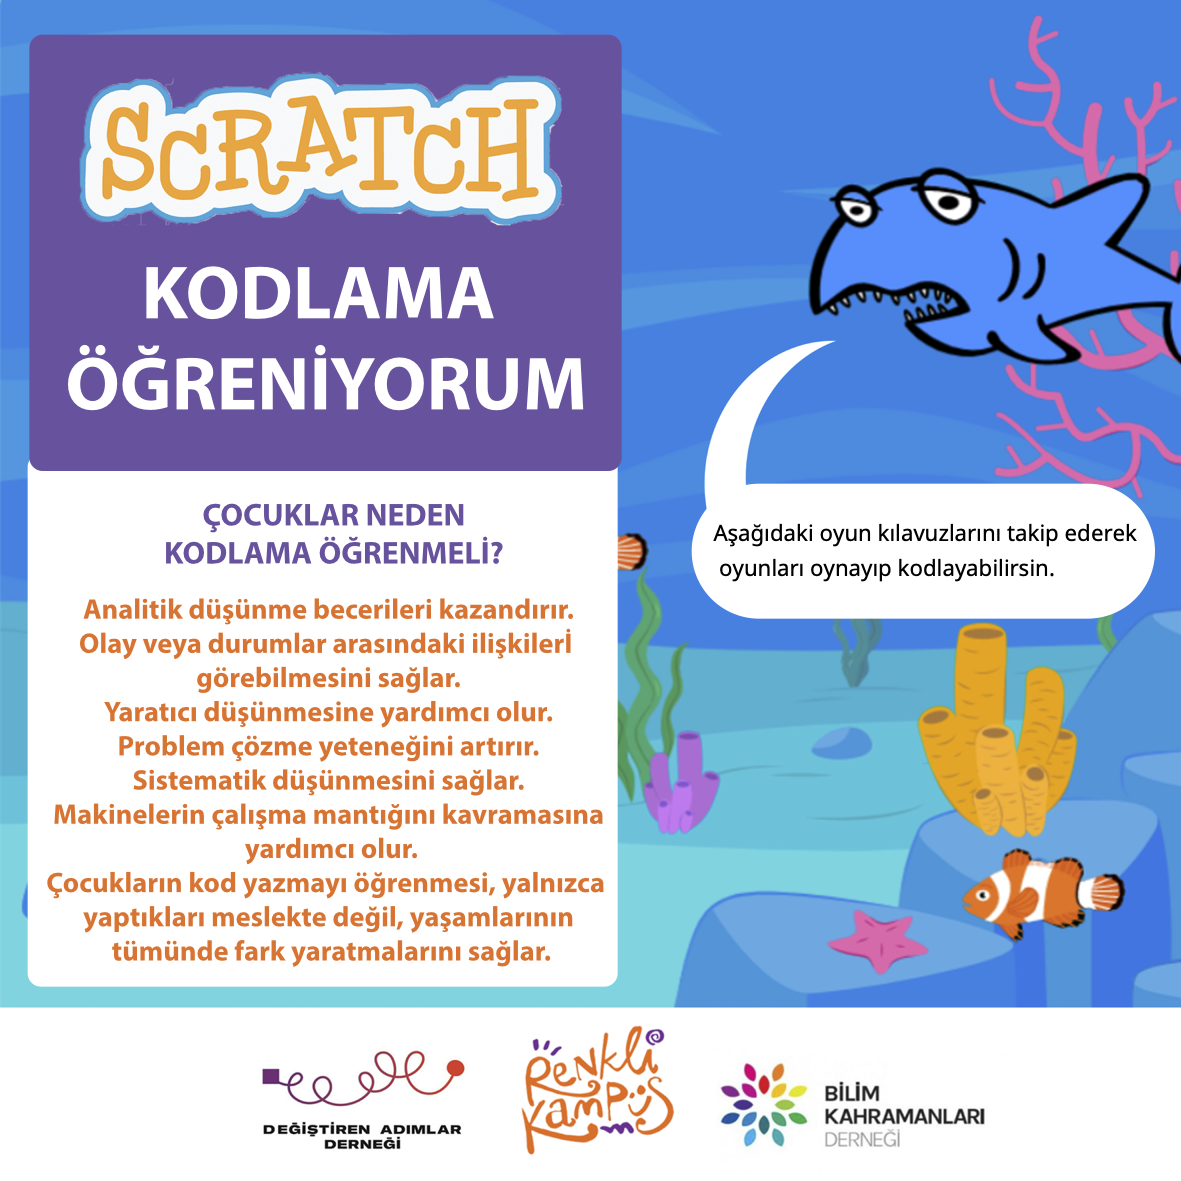 Scratch : Çocukların Kodlama Öğrenmesi için Eğlenceli Bir Uygulama